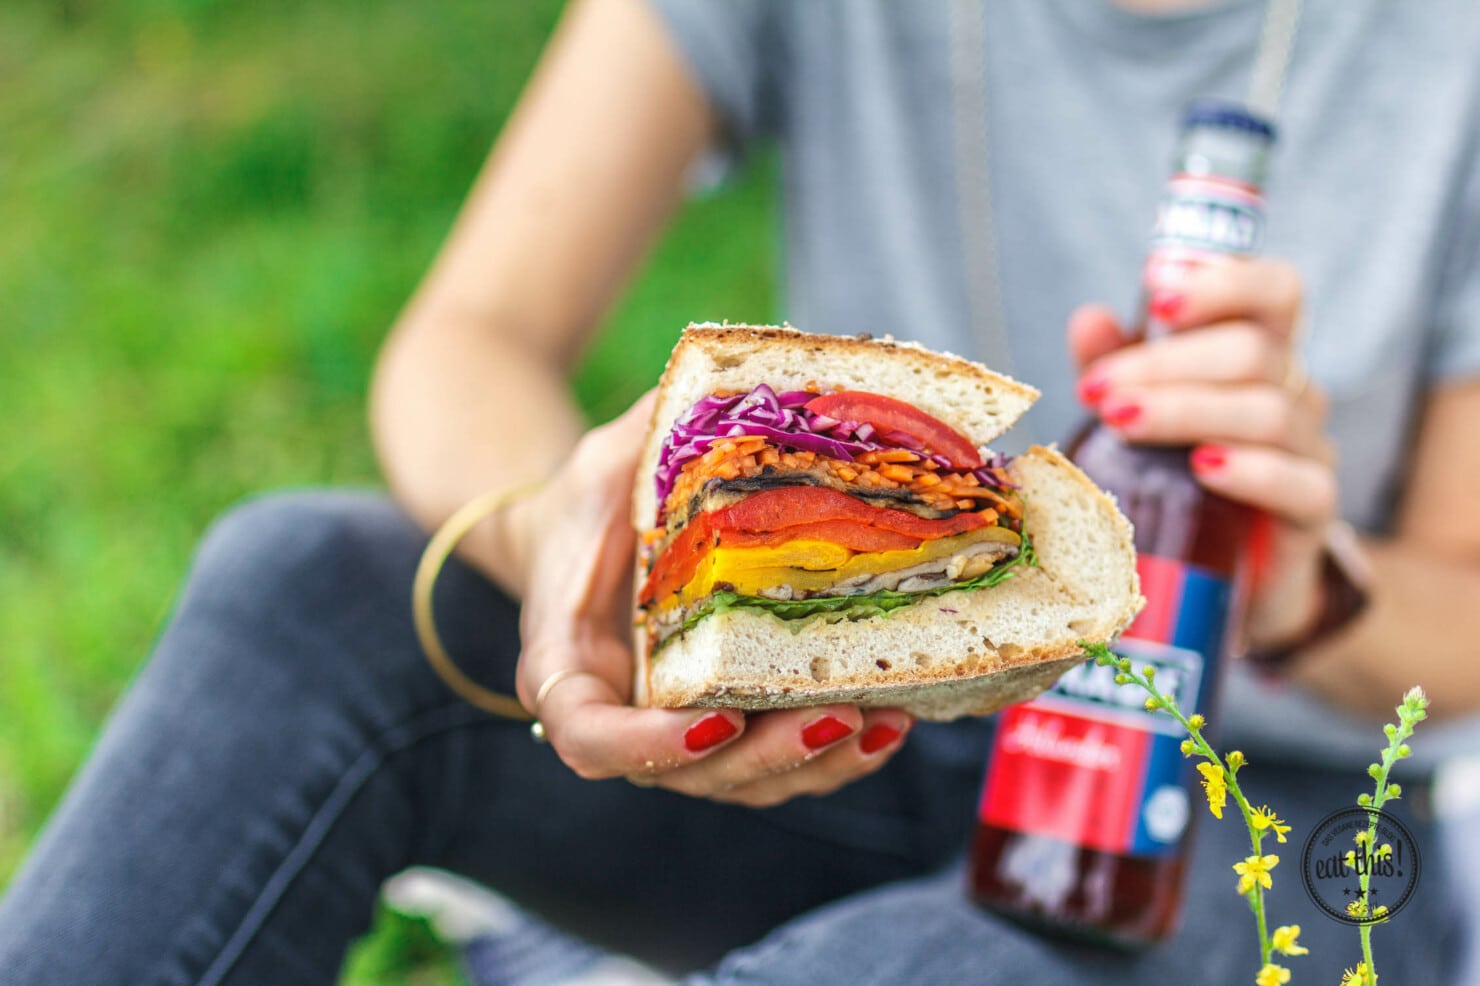 Grilled Veggie Picknick-Sandwich · Eat this! Foodblog für gesunde ...